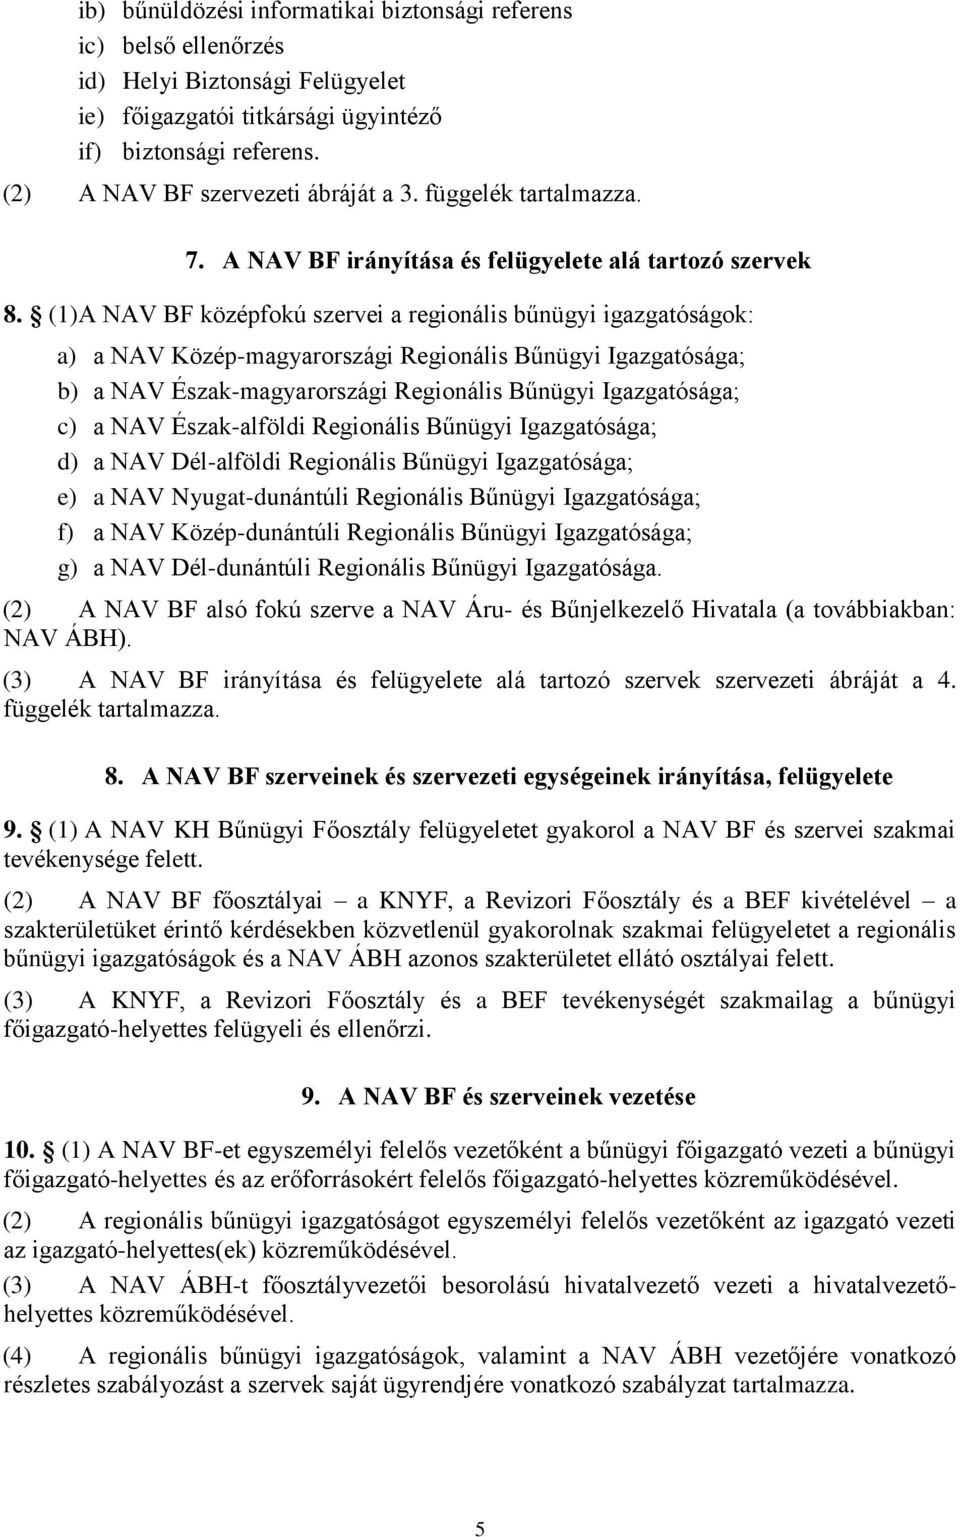 (1)A NAV BF középfokú szervei a regionális bűnügyi igazgatóságok: a) a NAV Közép-magyarországi Regionális Bűnügyi Igazgatósága; b) a NAV Észak-magyarországi Regionális Bűnügyi Igazgatósága; c) a NAV